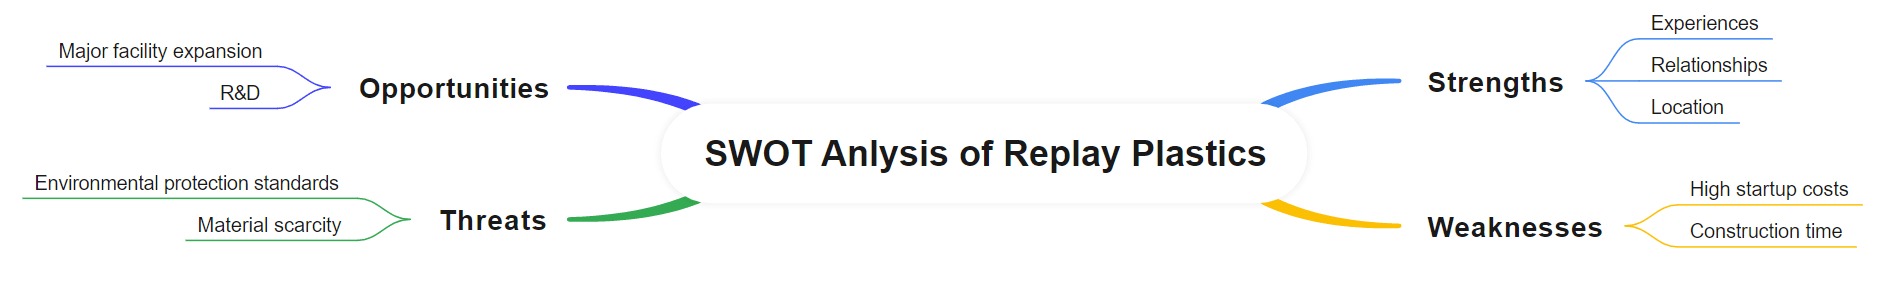 SWOT Analysis of Replay Plastics